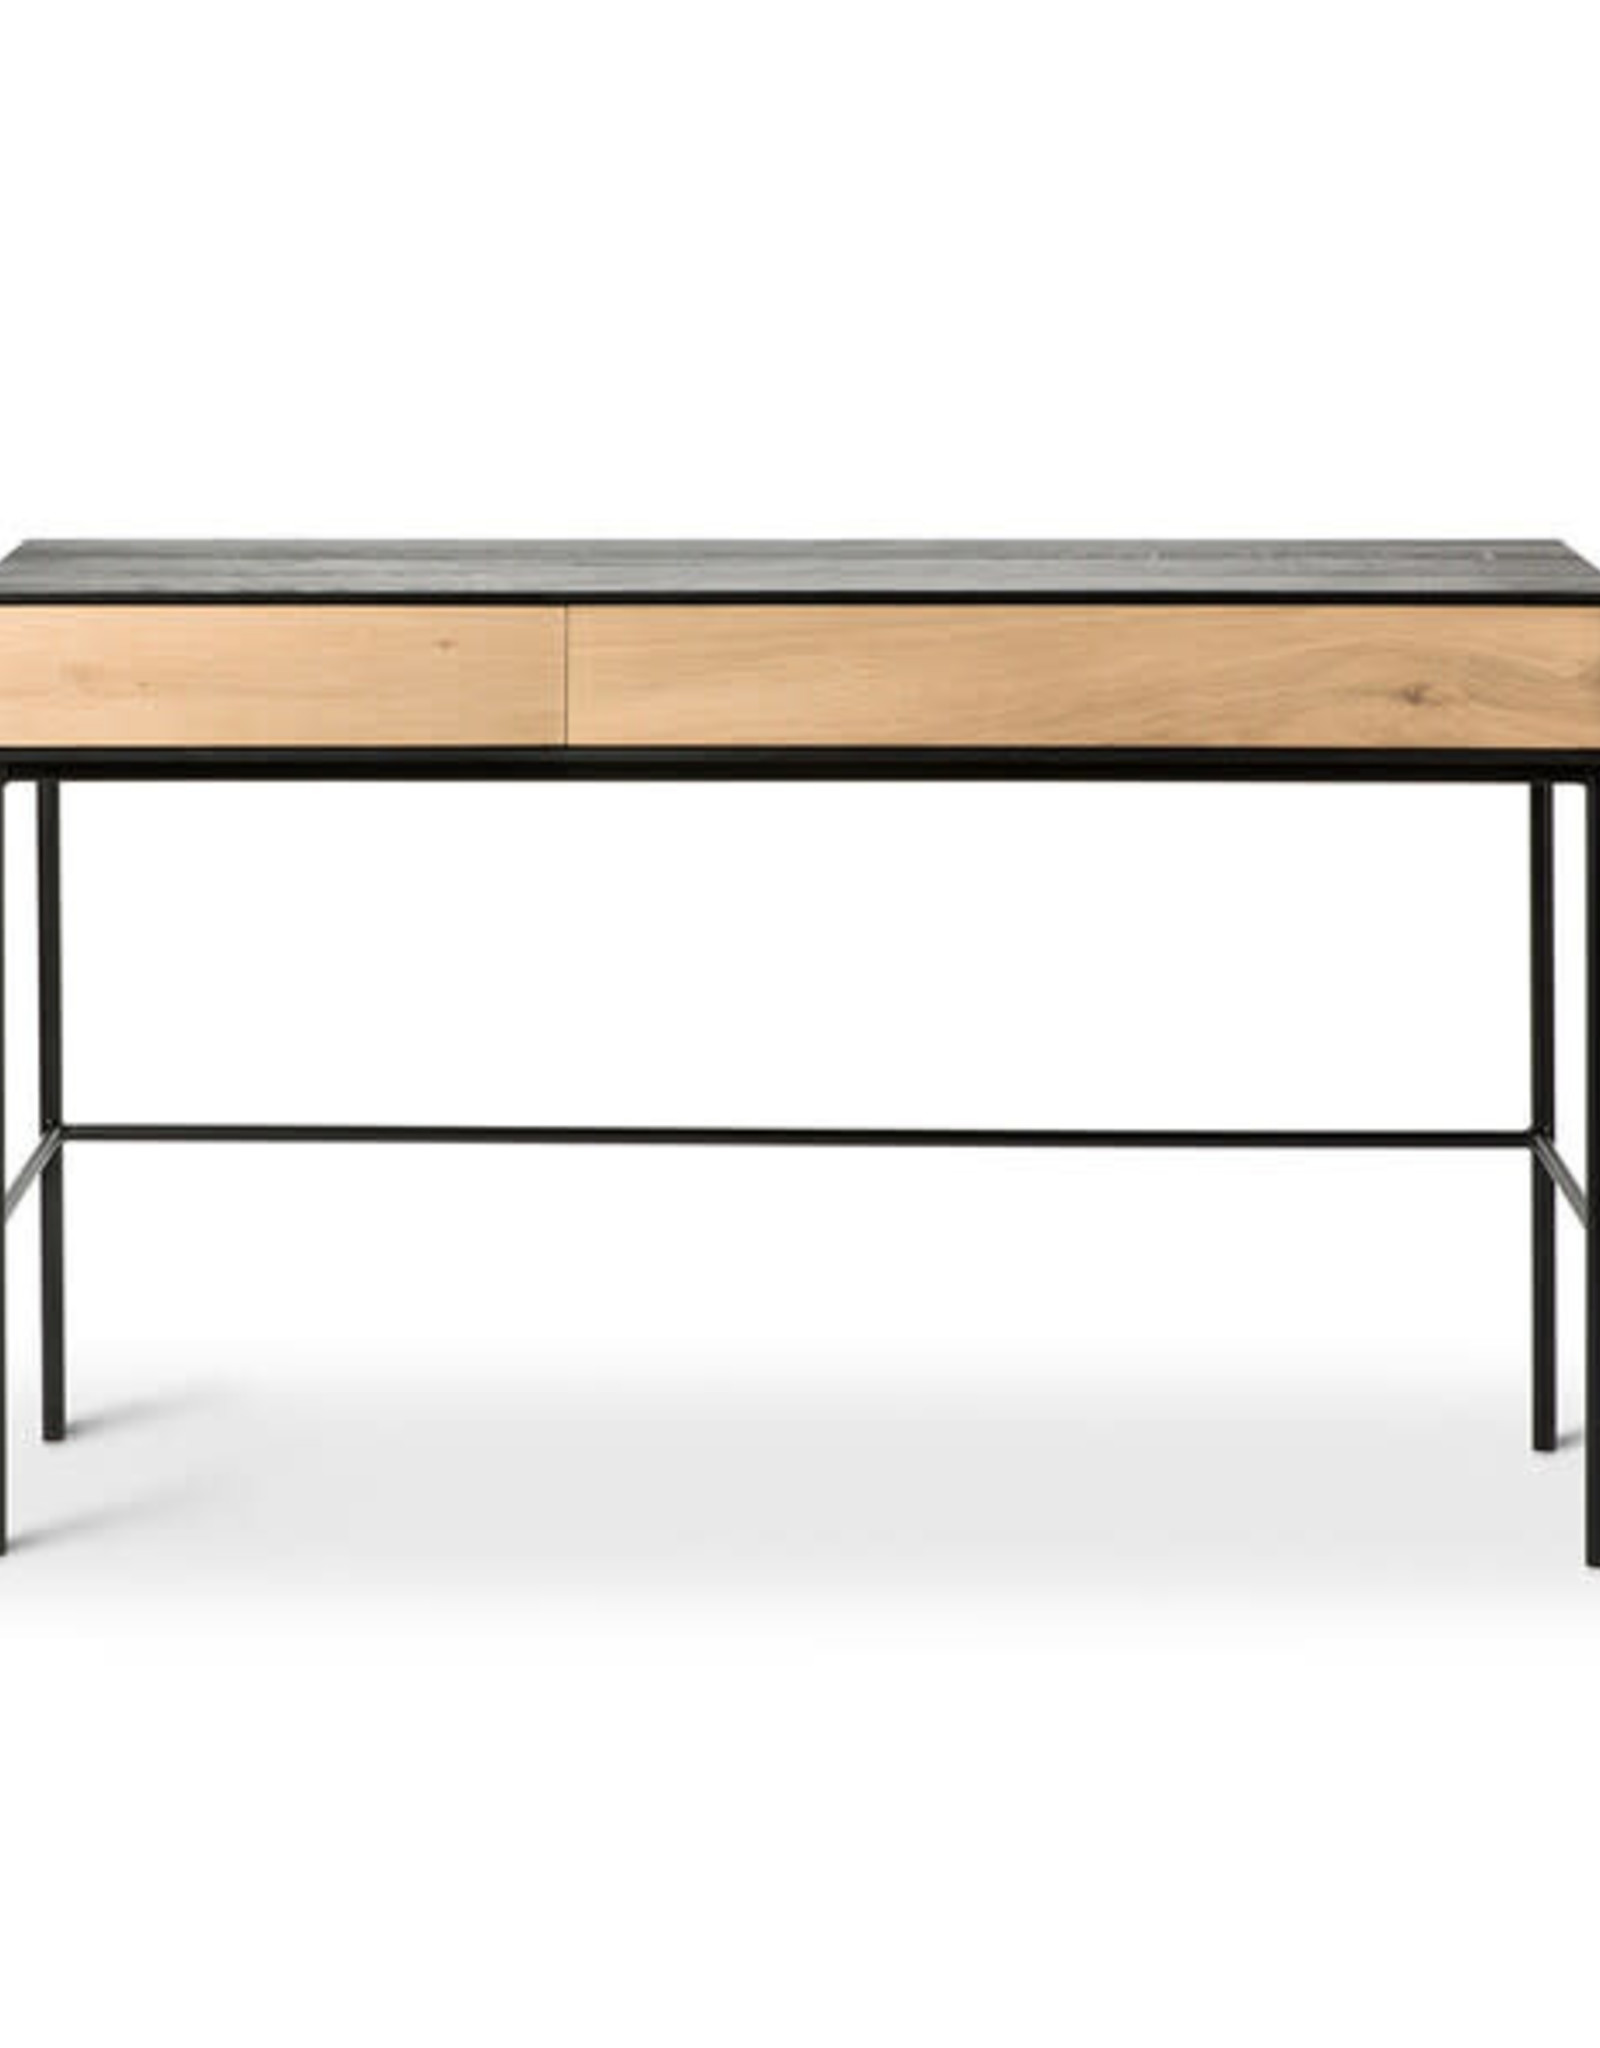 Oak Blackbird Desk - 2 Drawers - Varnished